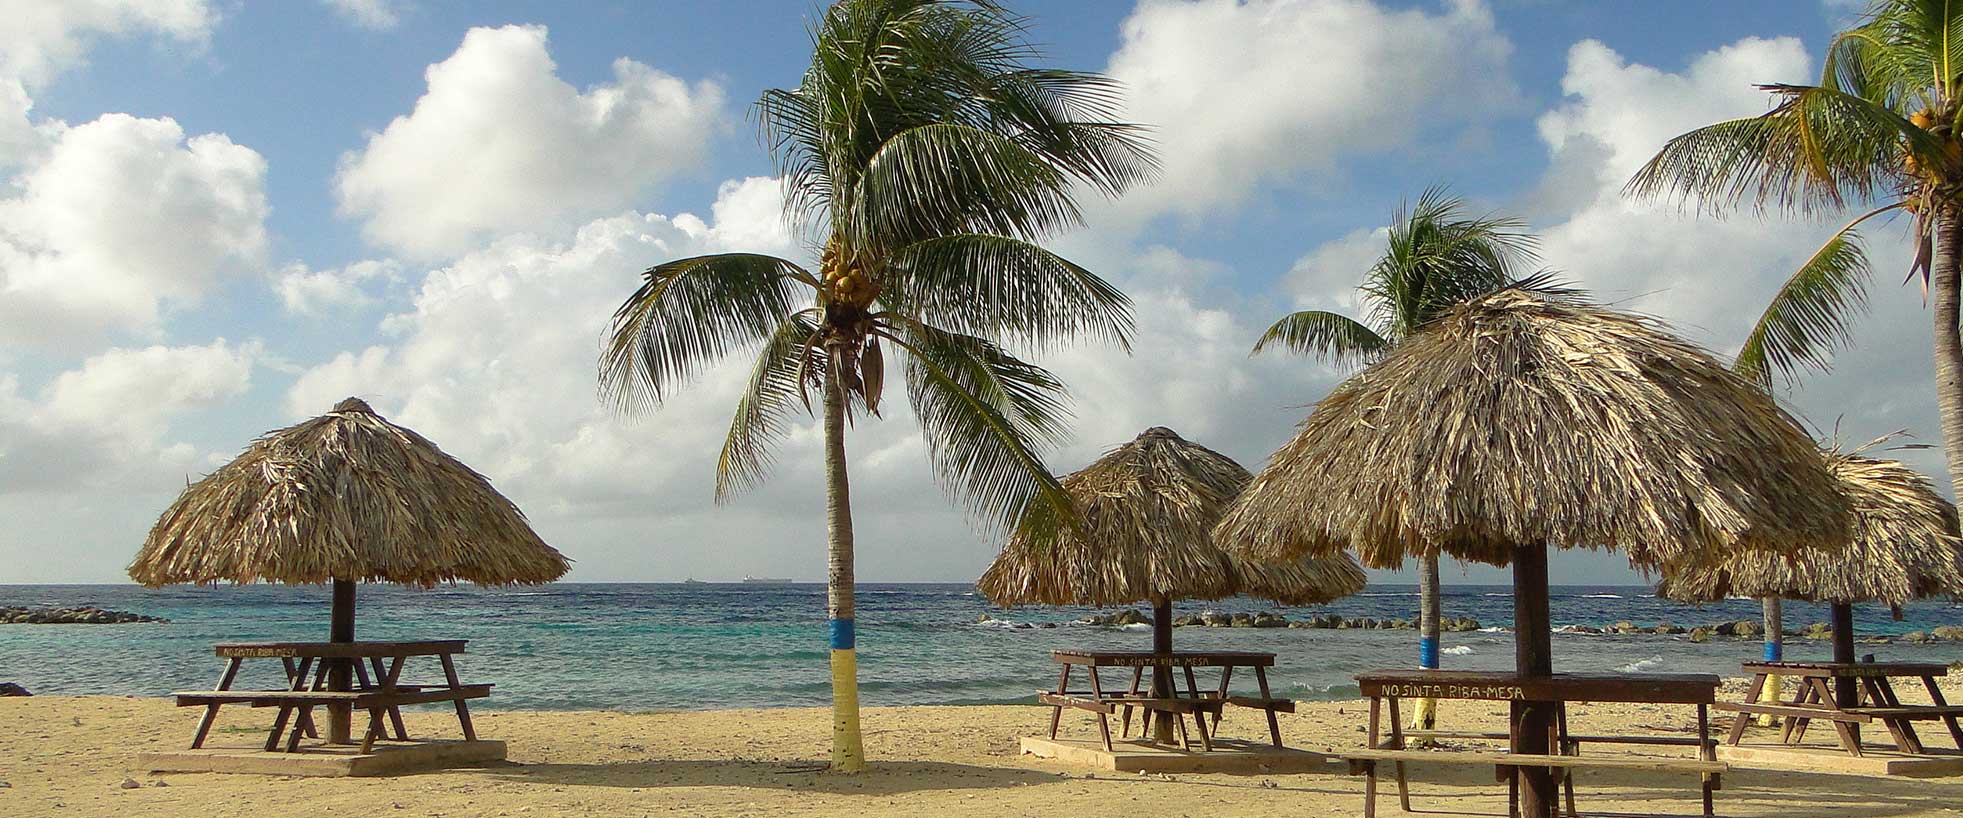 On Vacation - Curacao - Hotel Curacao Beach